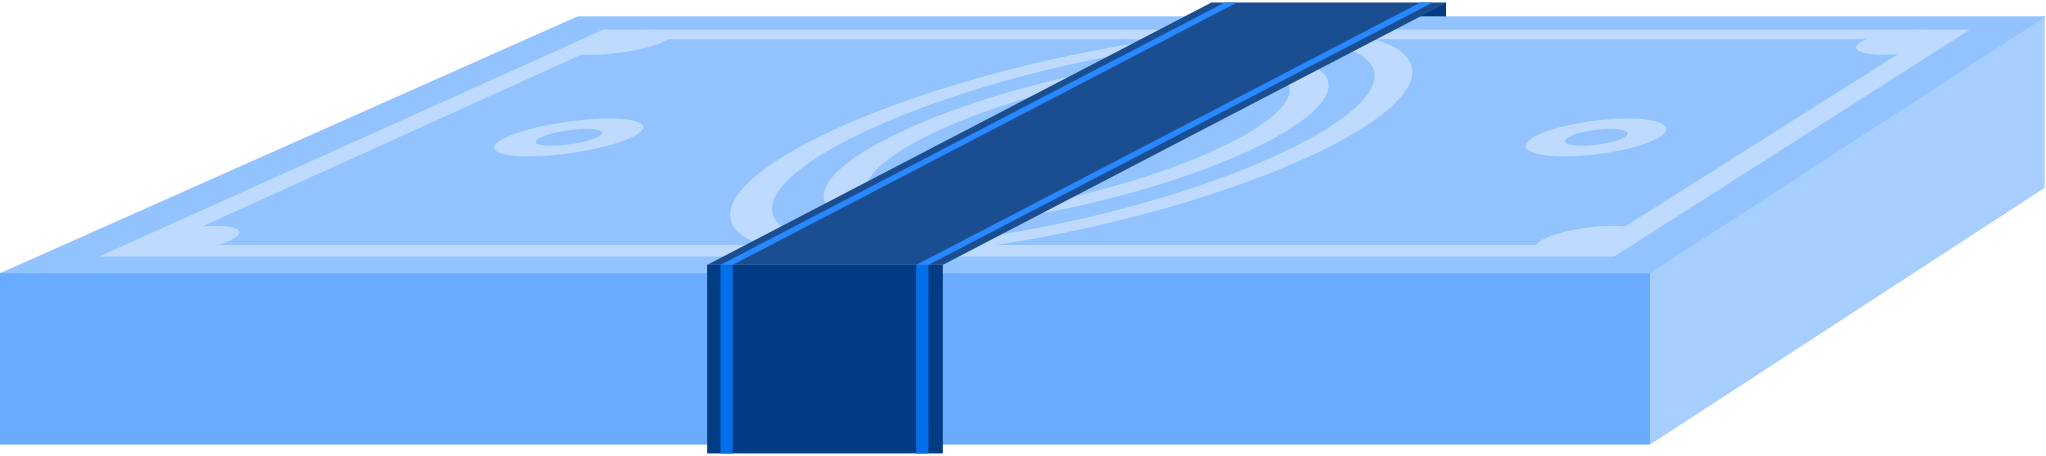 Illustration billet de banque aux formats PNG, SVG